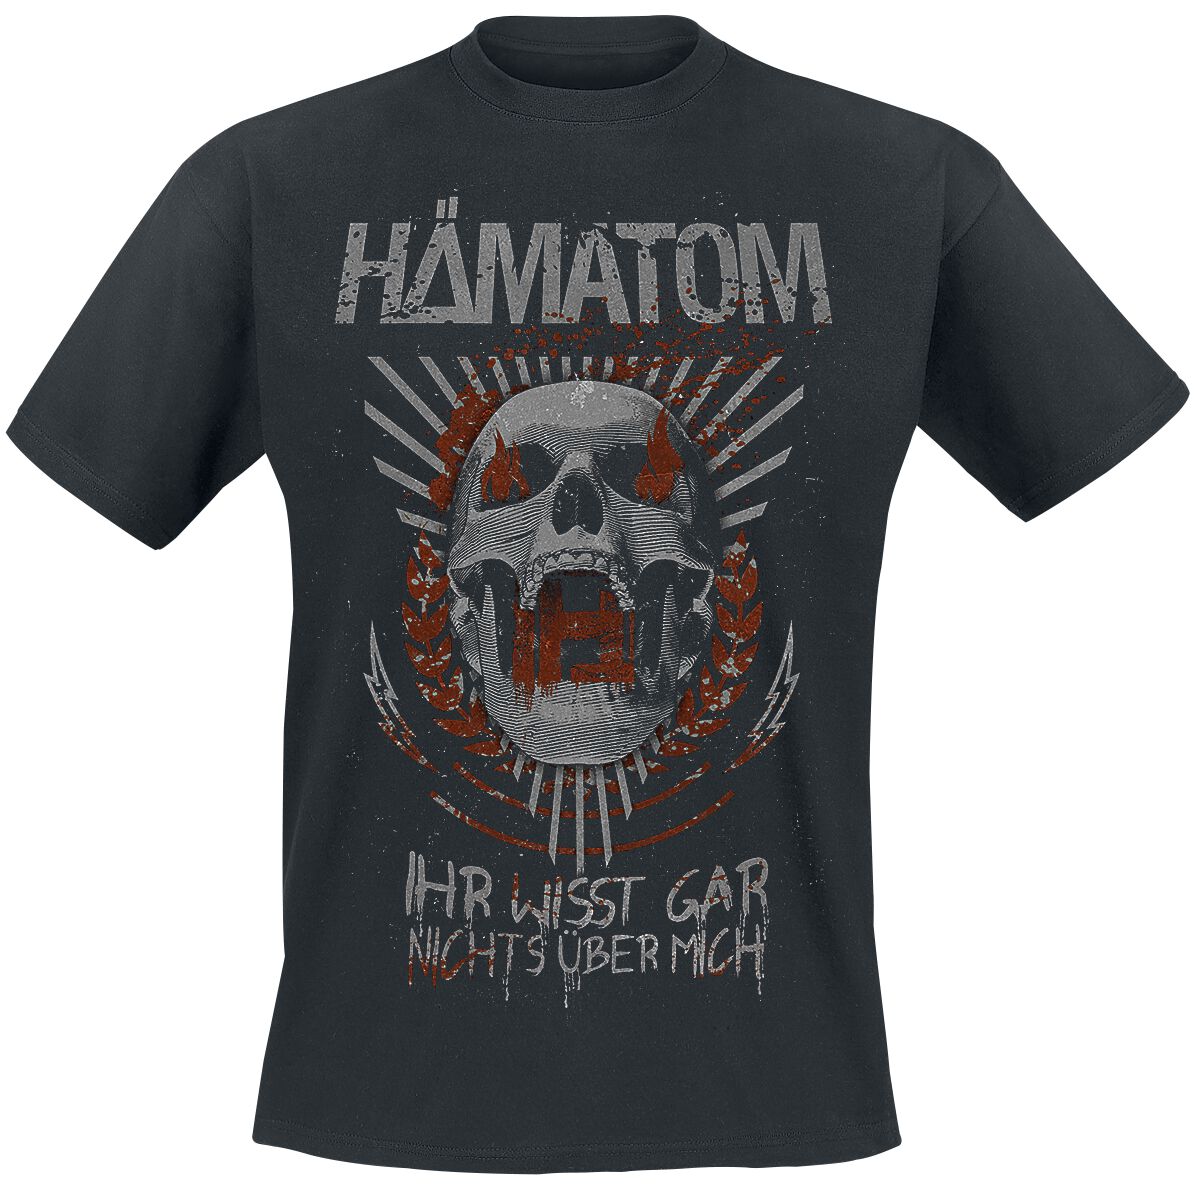 Hämatom T-Shirt - Ihr wisst gar nichts über mich - S bis 5XL - für Männer - Größe 3XL - schwarz  - Lizenziertes Merchandise!